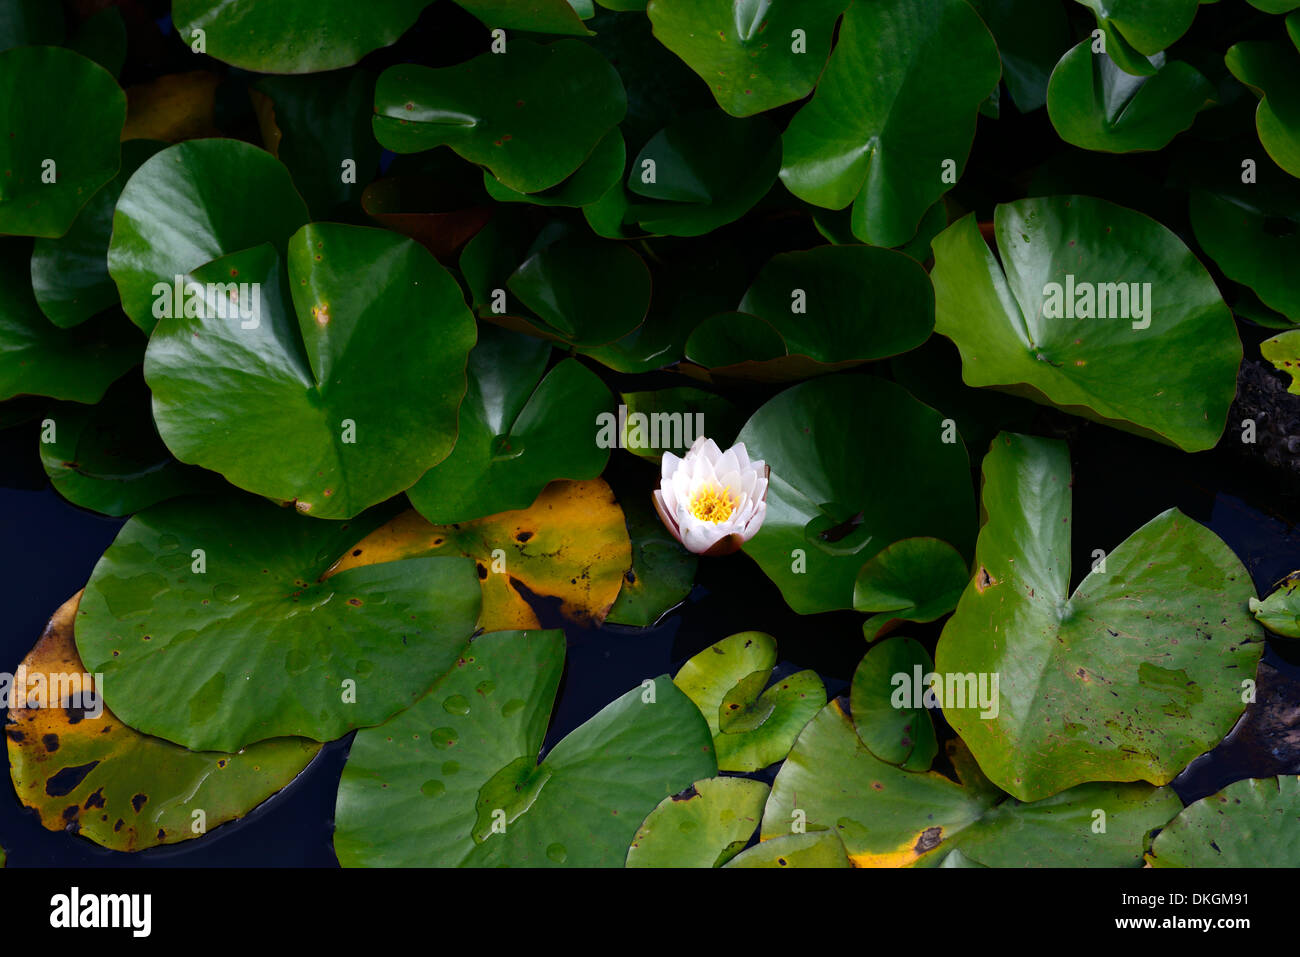 einzelne Weiße Seerose Blume zwischen grünen Blätter Pads Teich pool Stockfoto